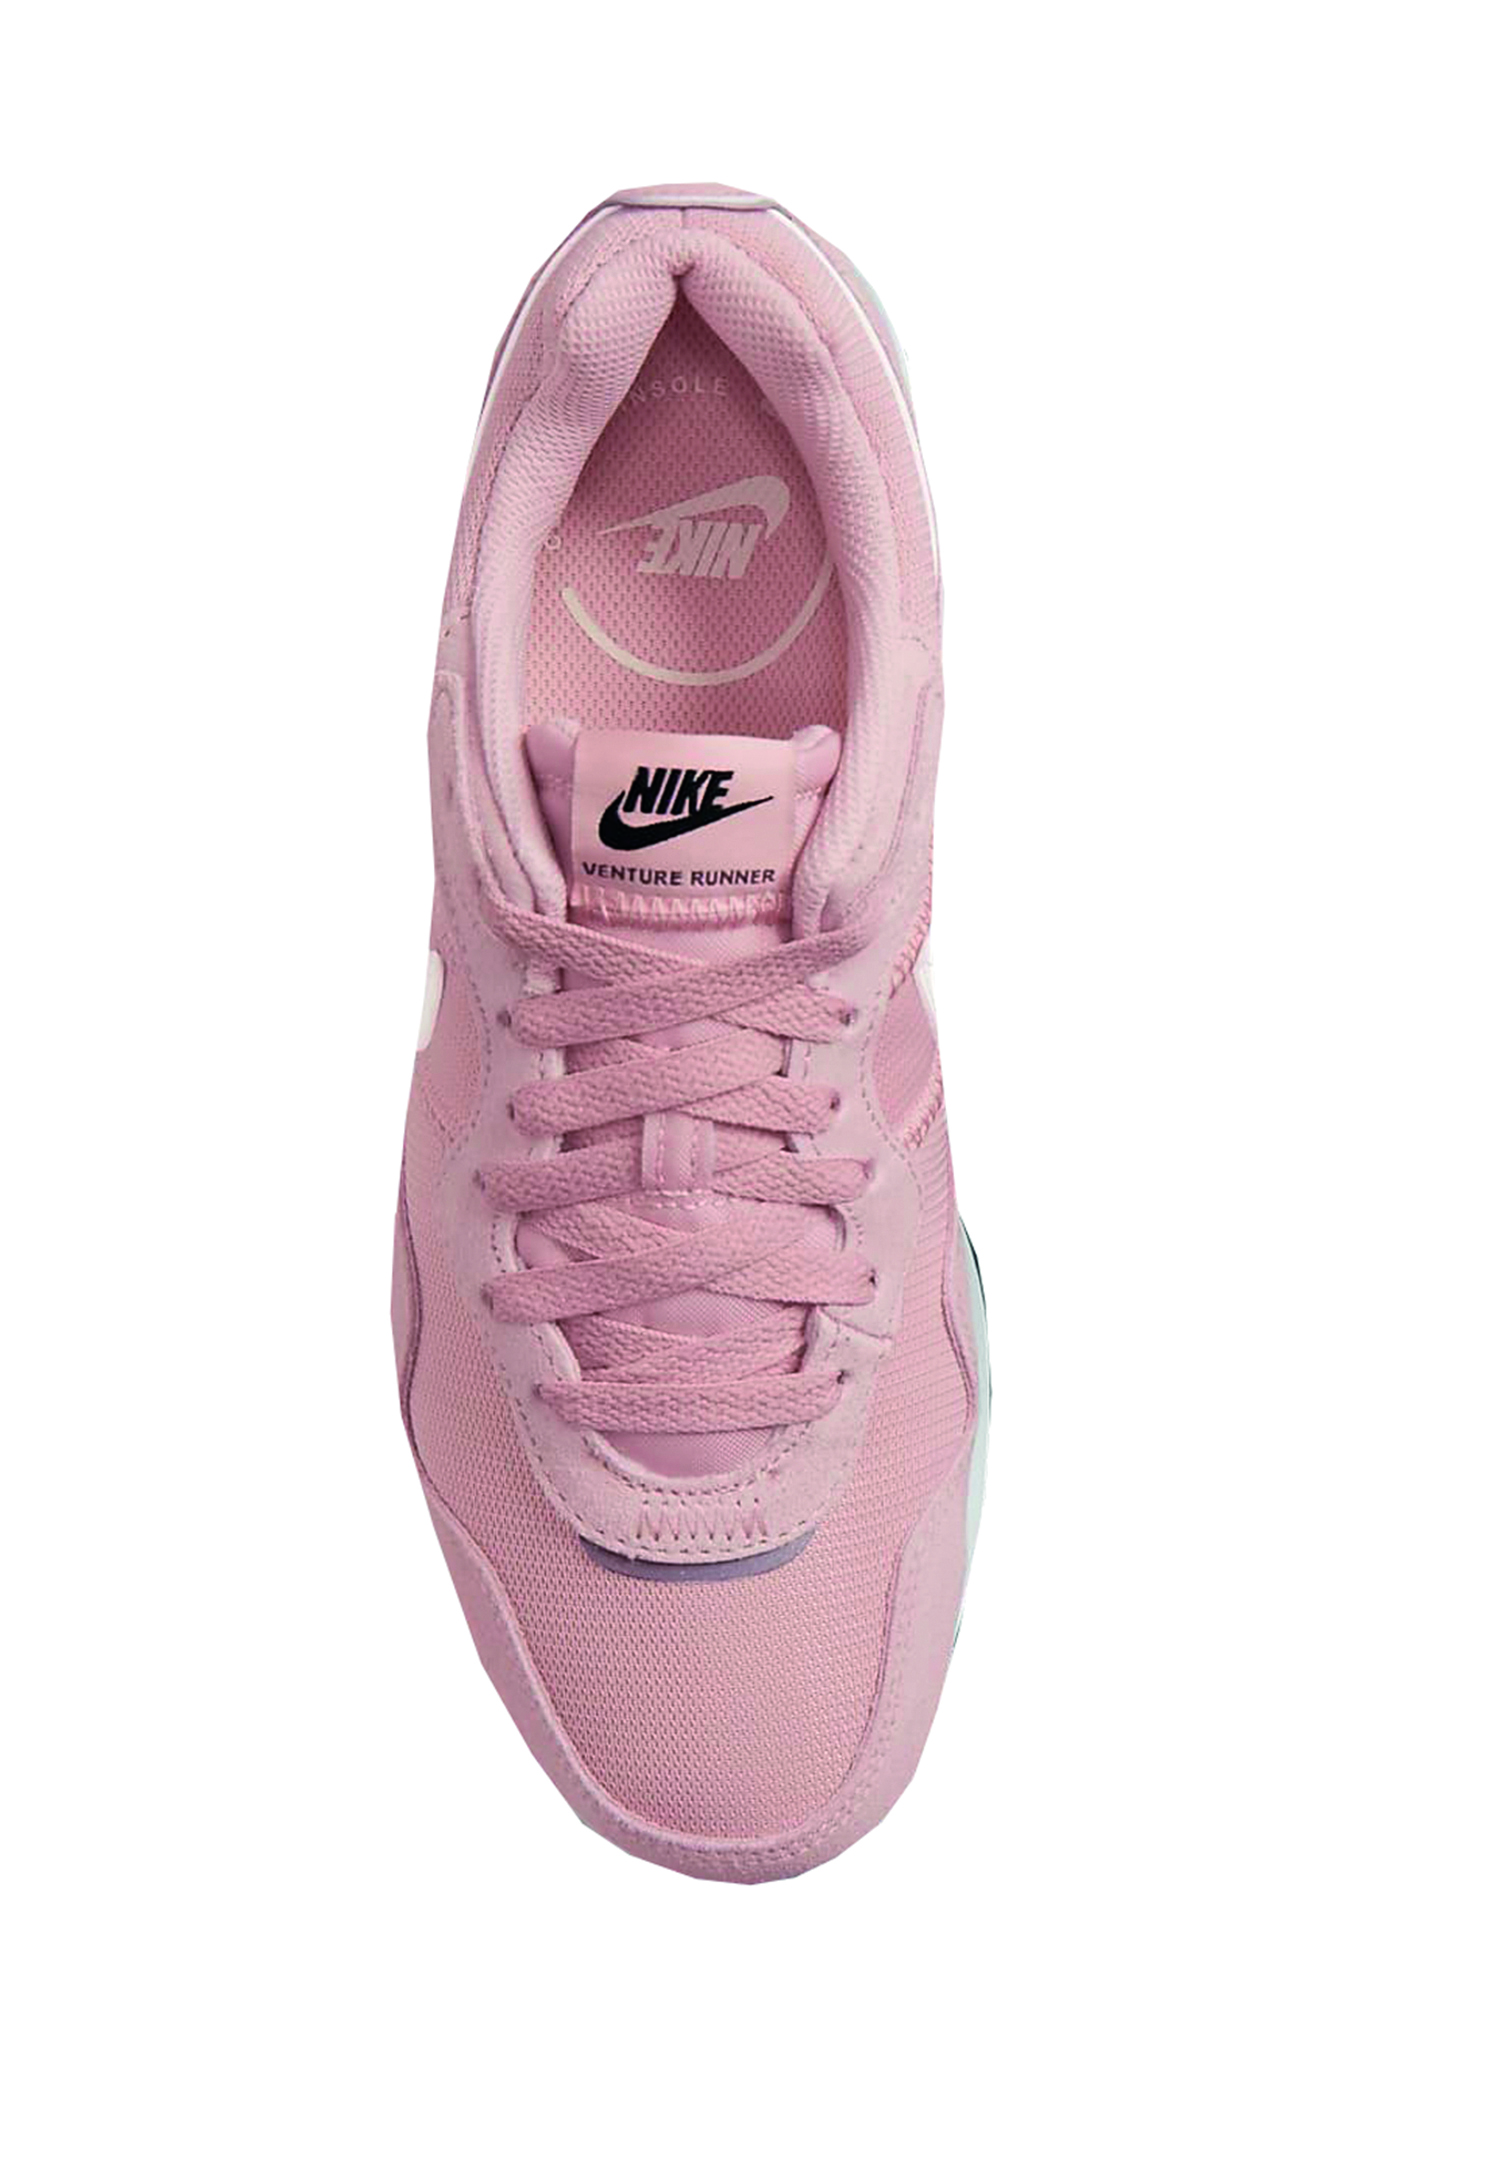 Nike Venture Runner Laufschuhe Womens Damen Sneaker Sportschuhe Run CK2948 601 rosa